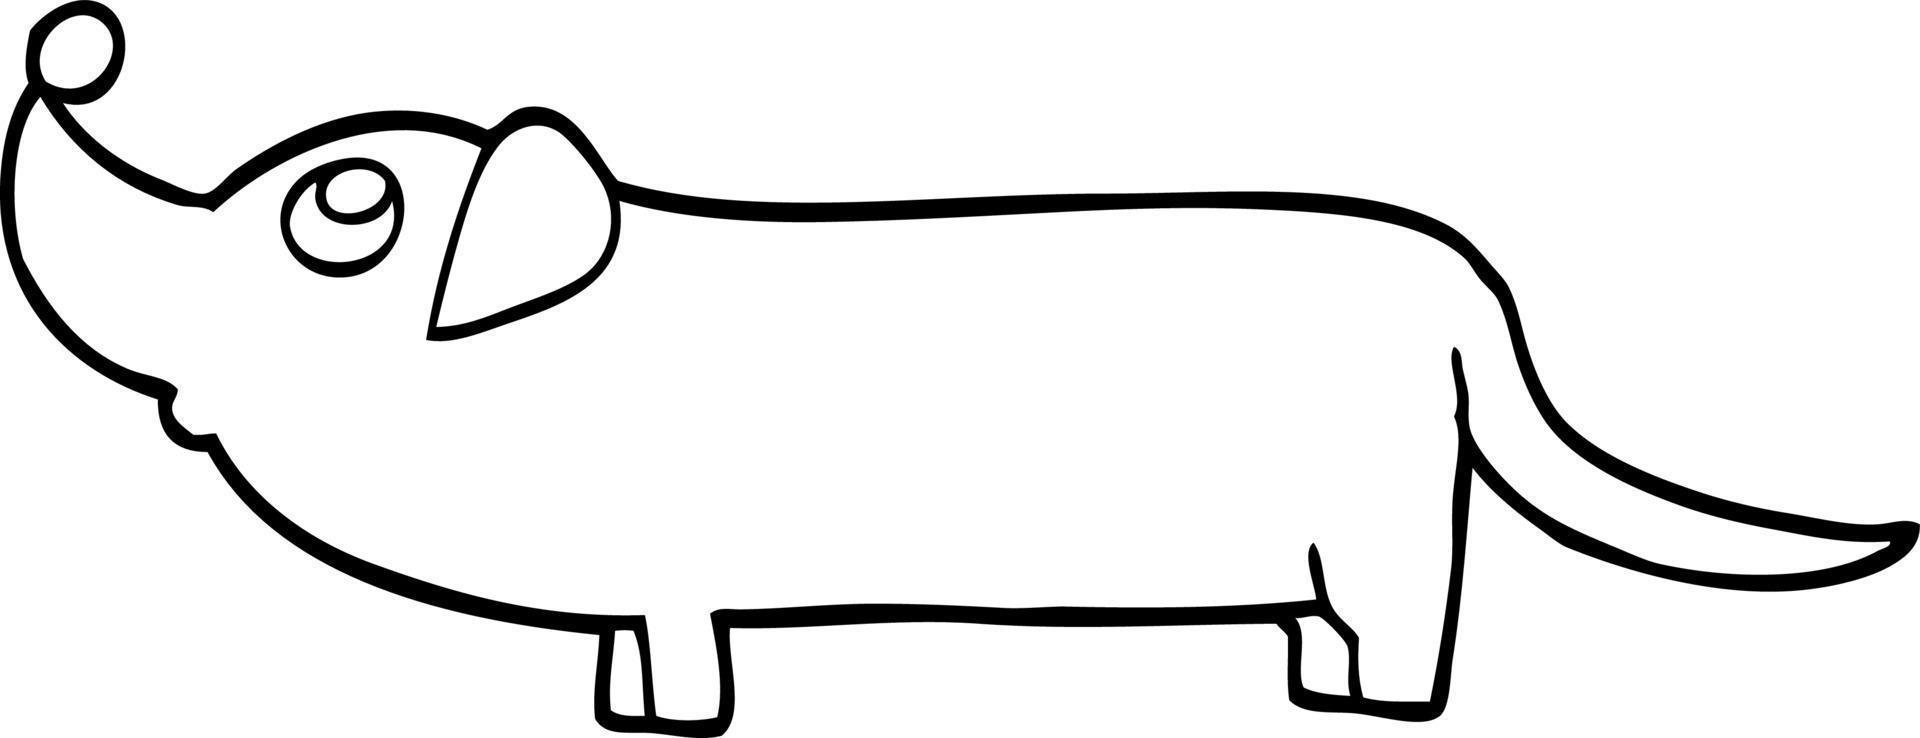 perro salchicha de dibujos animados en blanco y negro vector